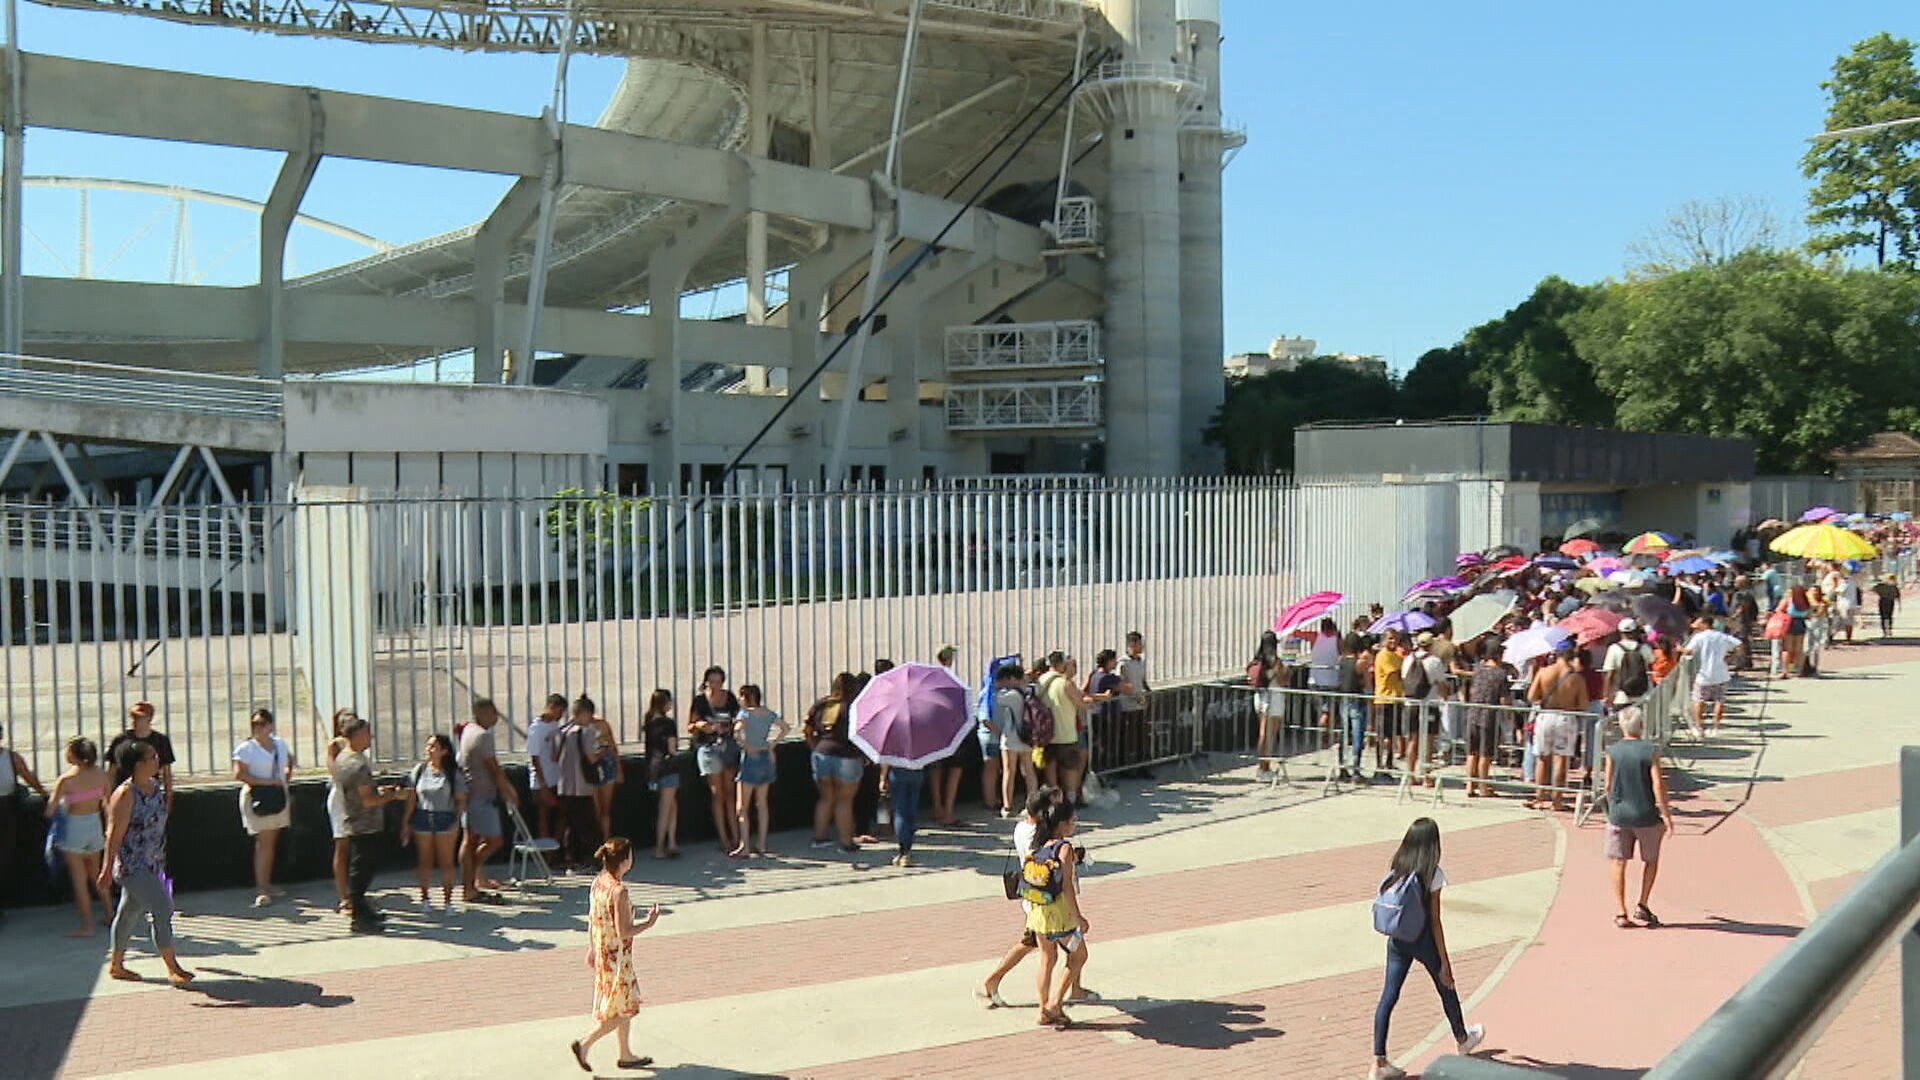 Fãs formam filas e chegam até no dia anterior para comprar ingressos para show de Bruno Mars no Rio